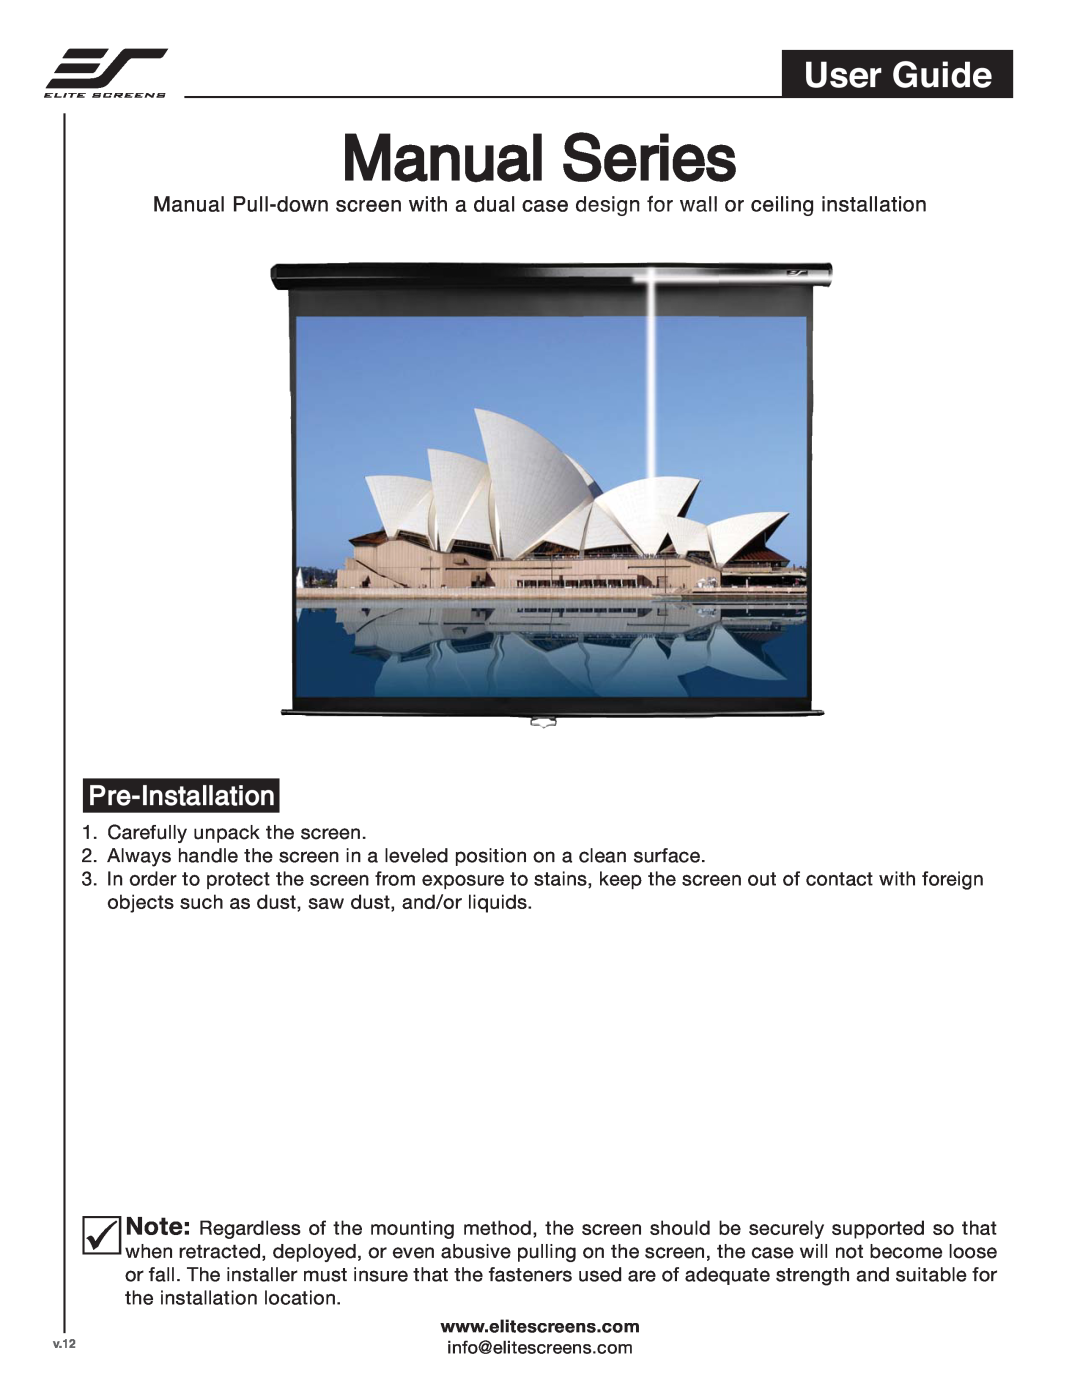 Elite Screens 71120, 135170 manual Pre-Installation, Manual Series, User Guide 